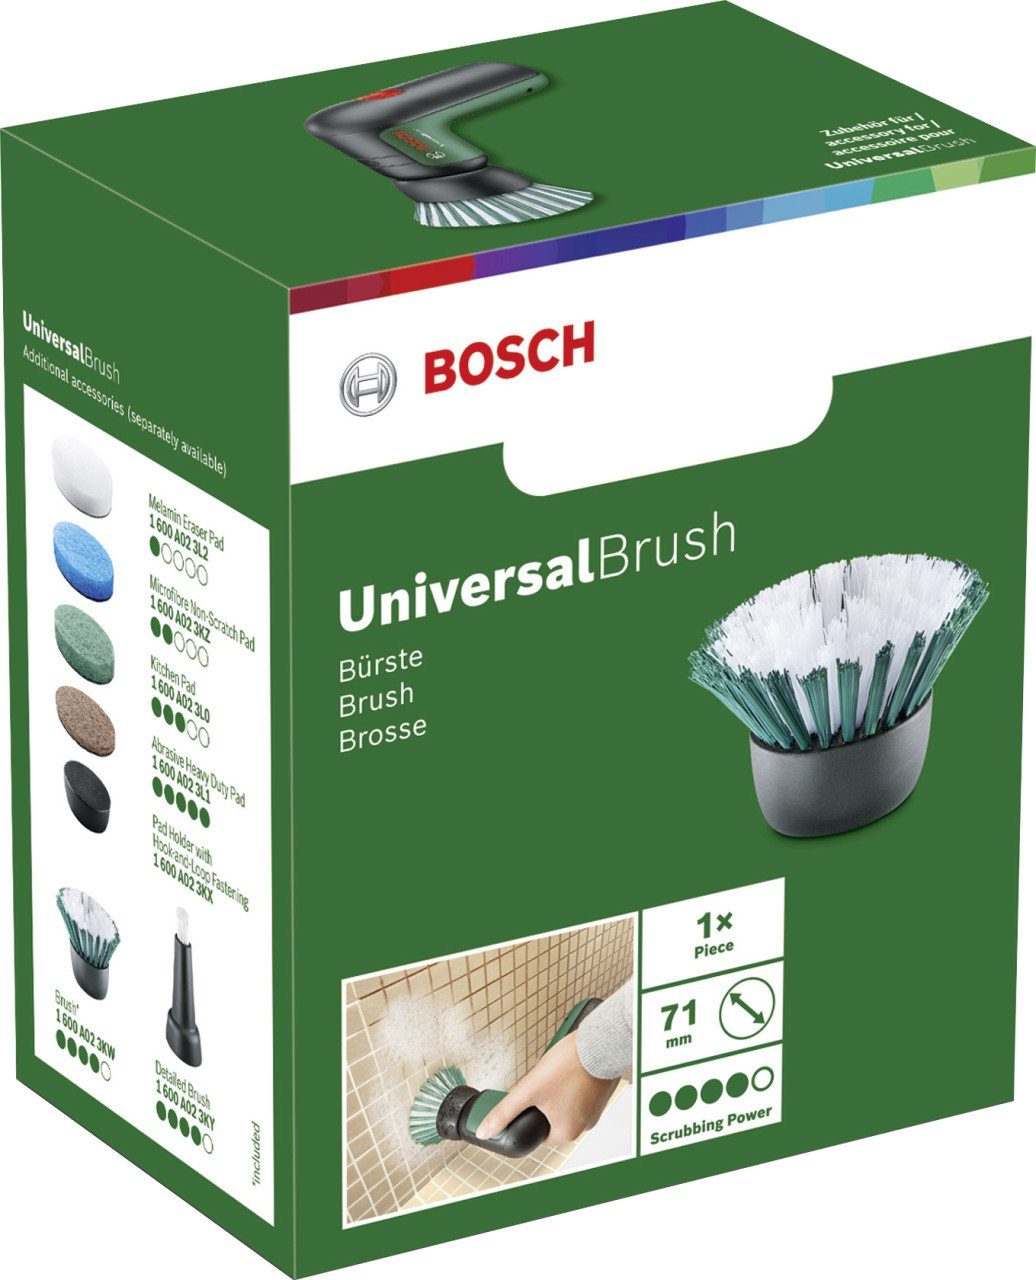 Borstenbürste für Drahtbürste UniversalBrush Bosch BOSCH